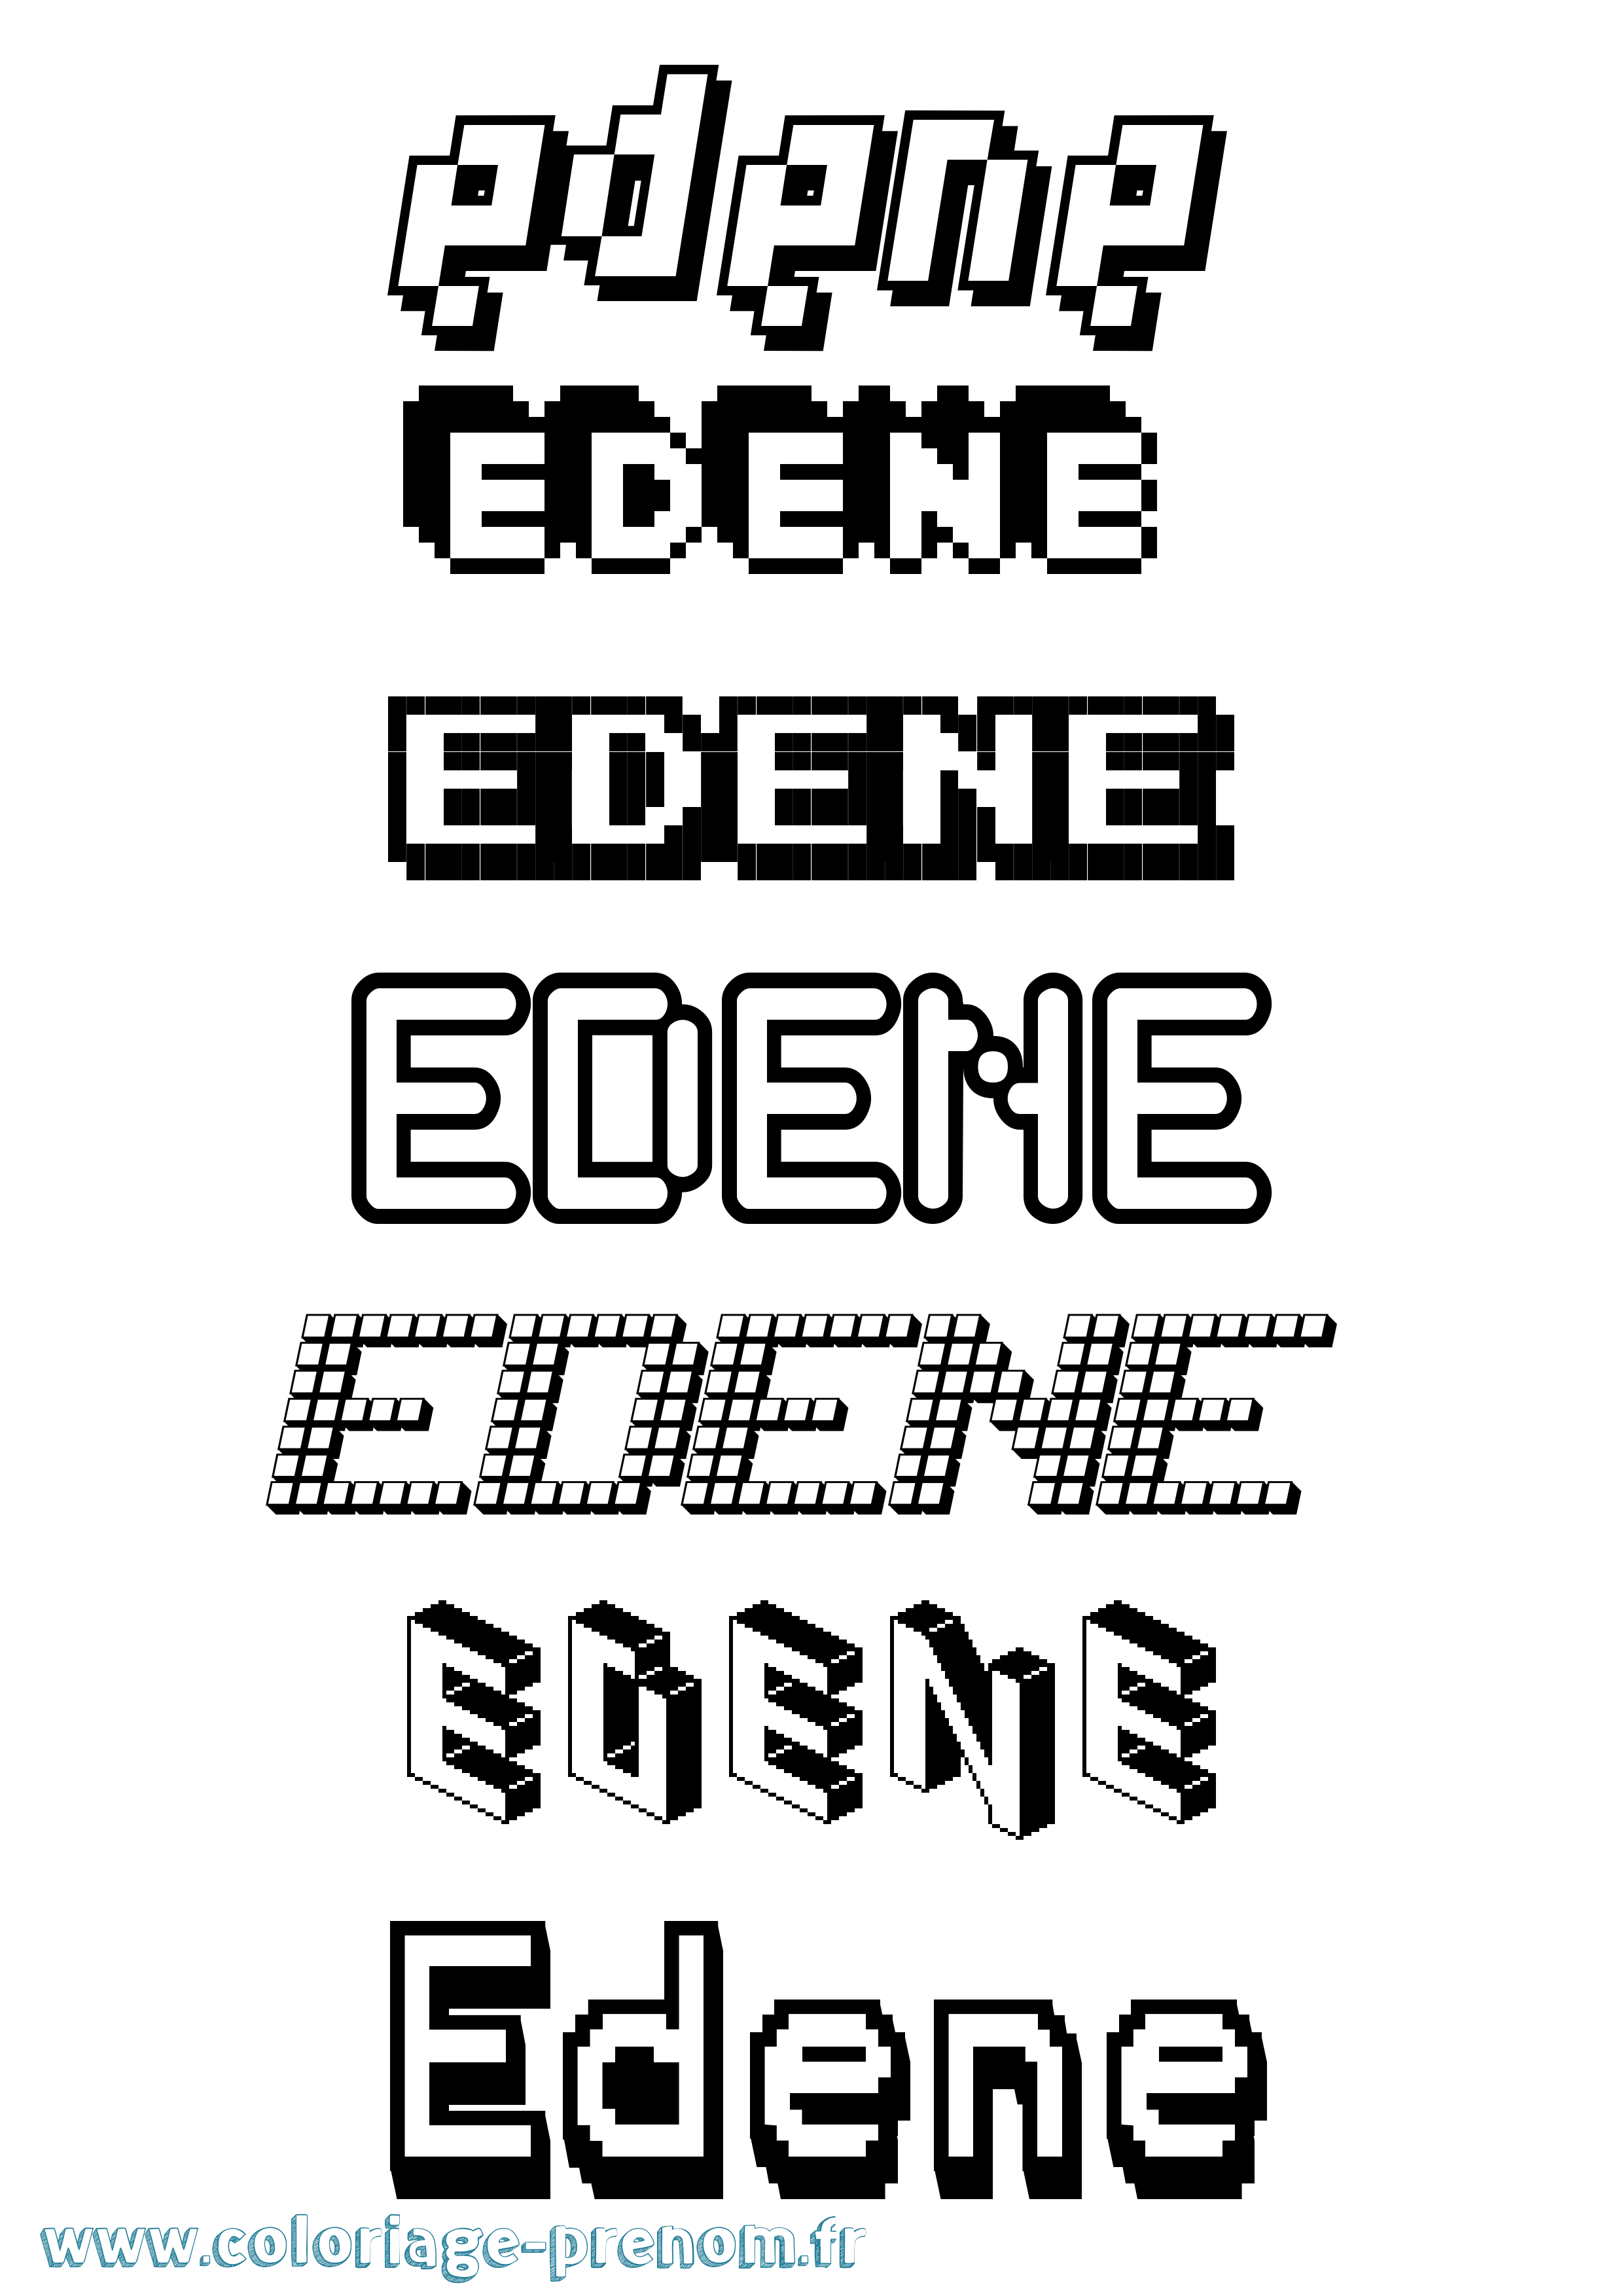 Coloriage prénom Edene Pixel